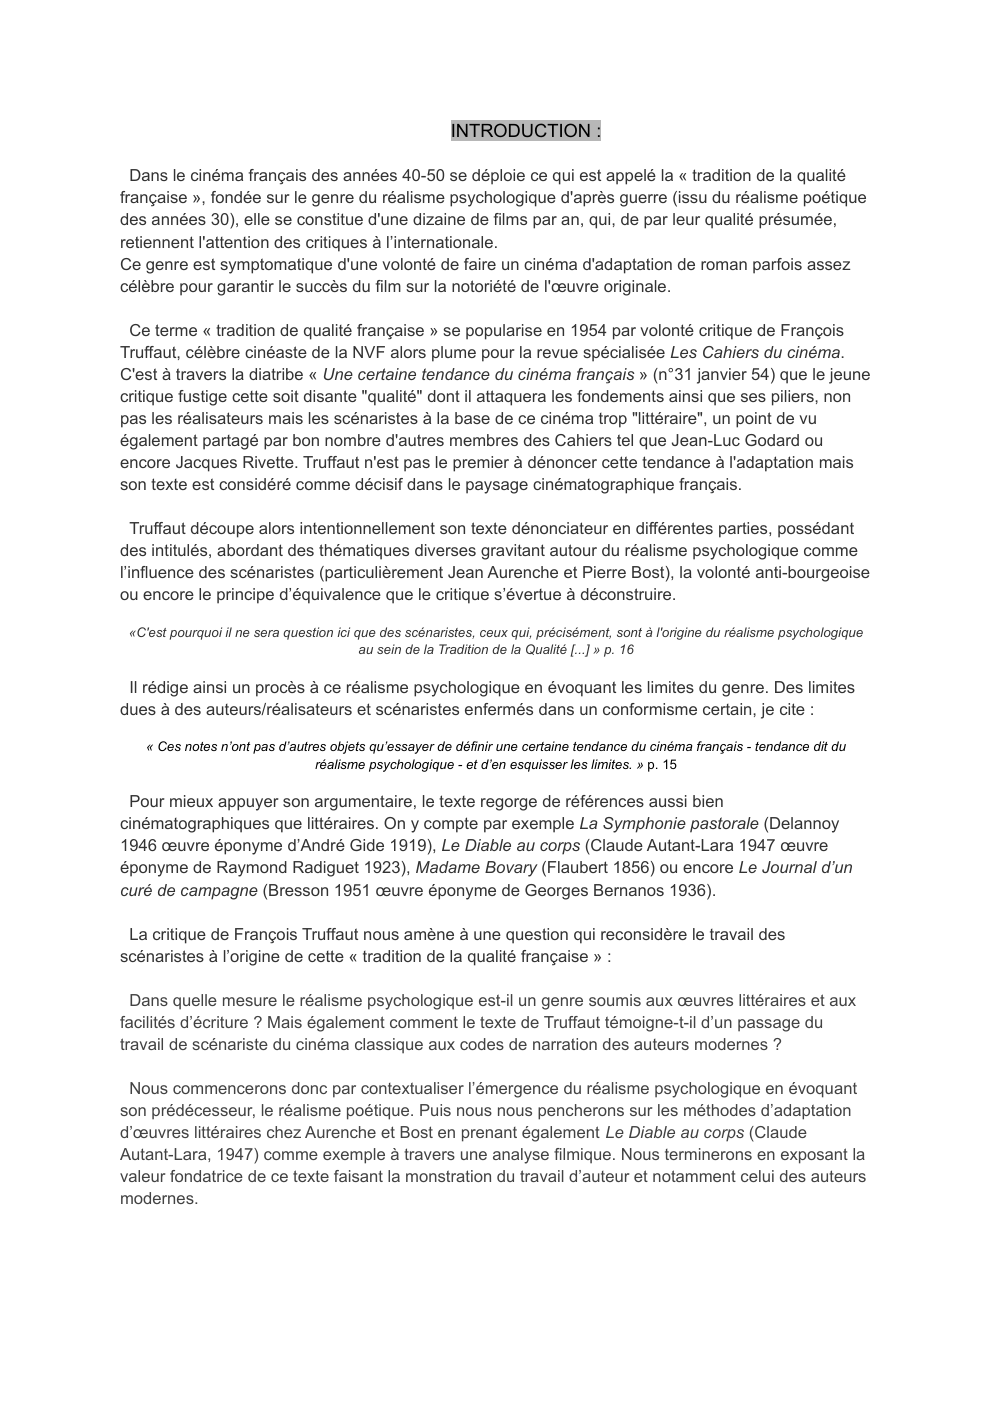 Prévisualisation du document Exposé sur « Une certaine tendance du cinéma français » de Truffaut(n°31 janvier 54 des Cahiers)